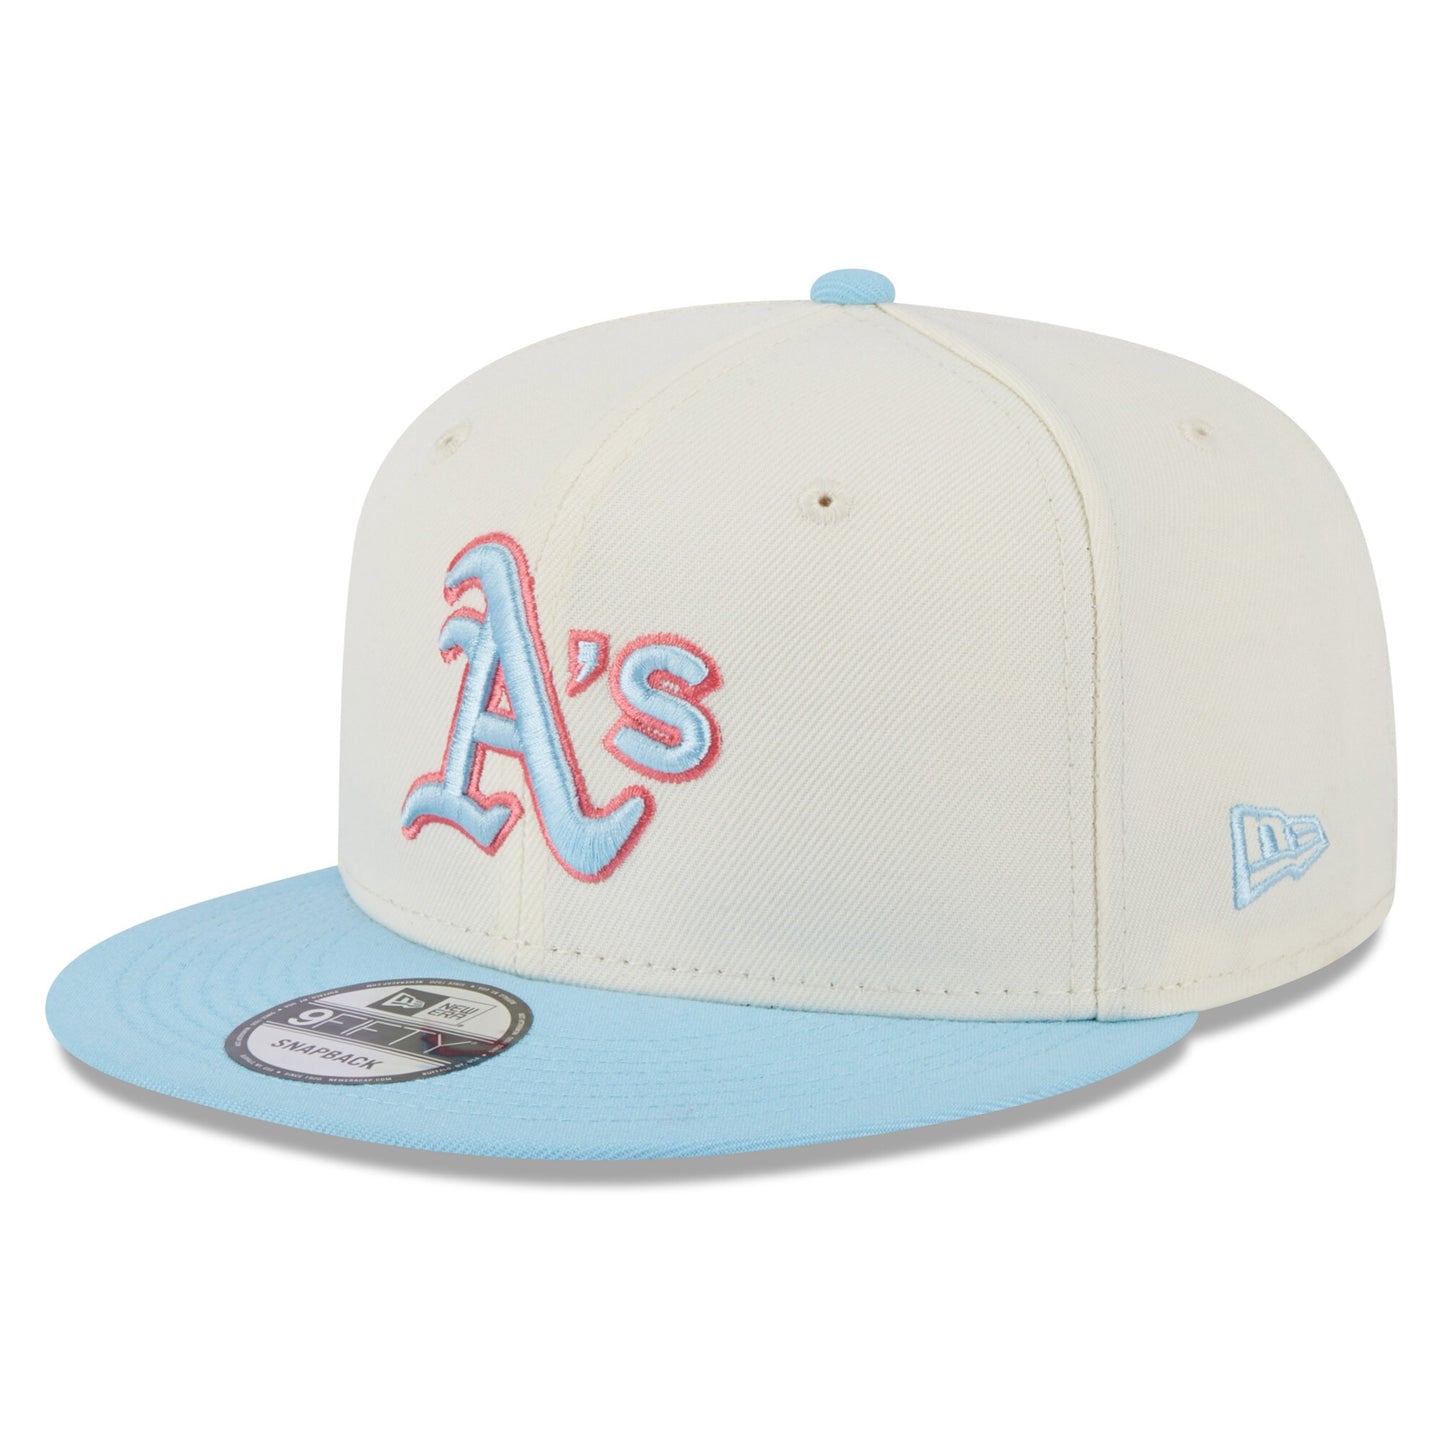 Oakland Athletics New Era Spring Basic Two-Tone 9FIFTY Snapback Hat - Cream/Light Blue